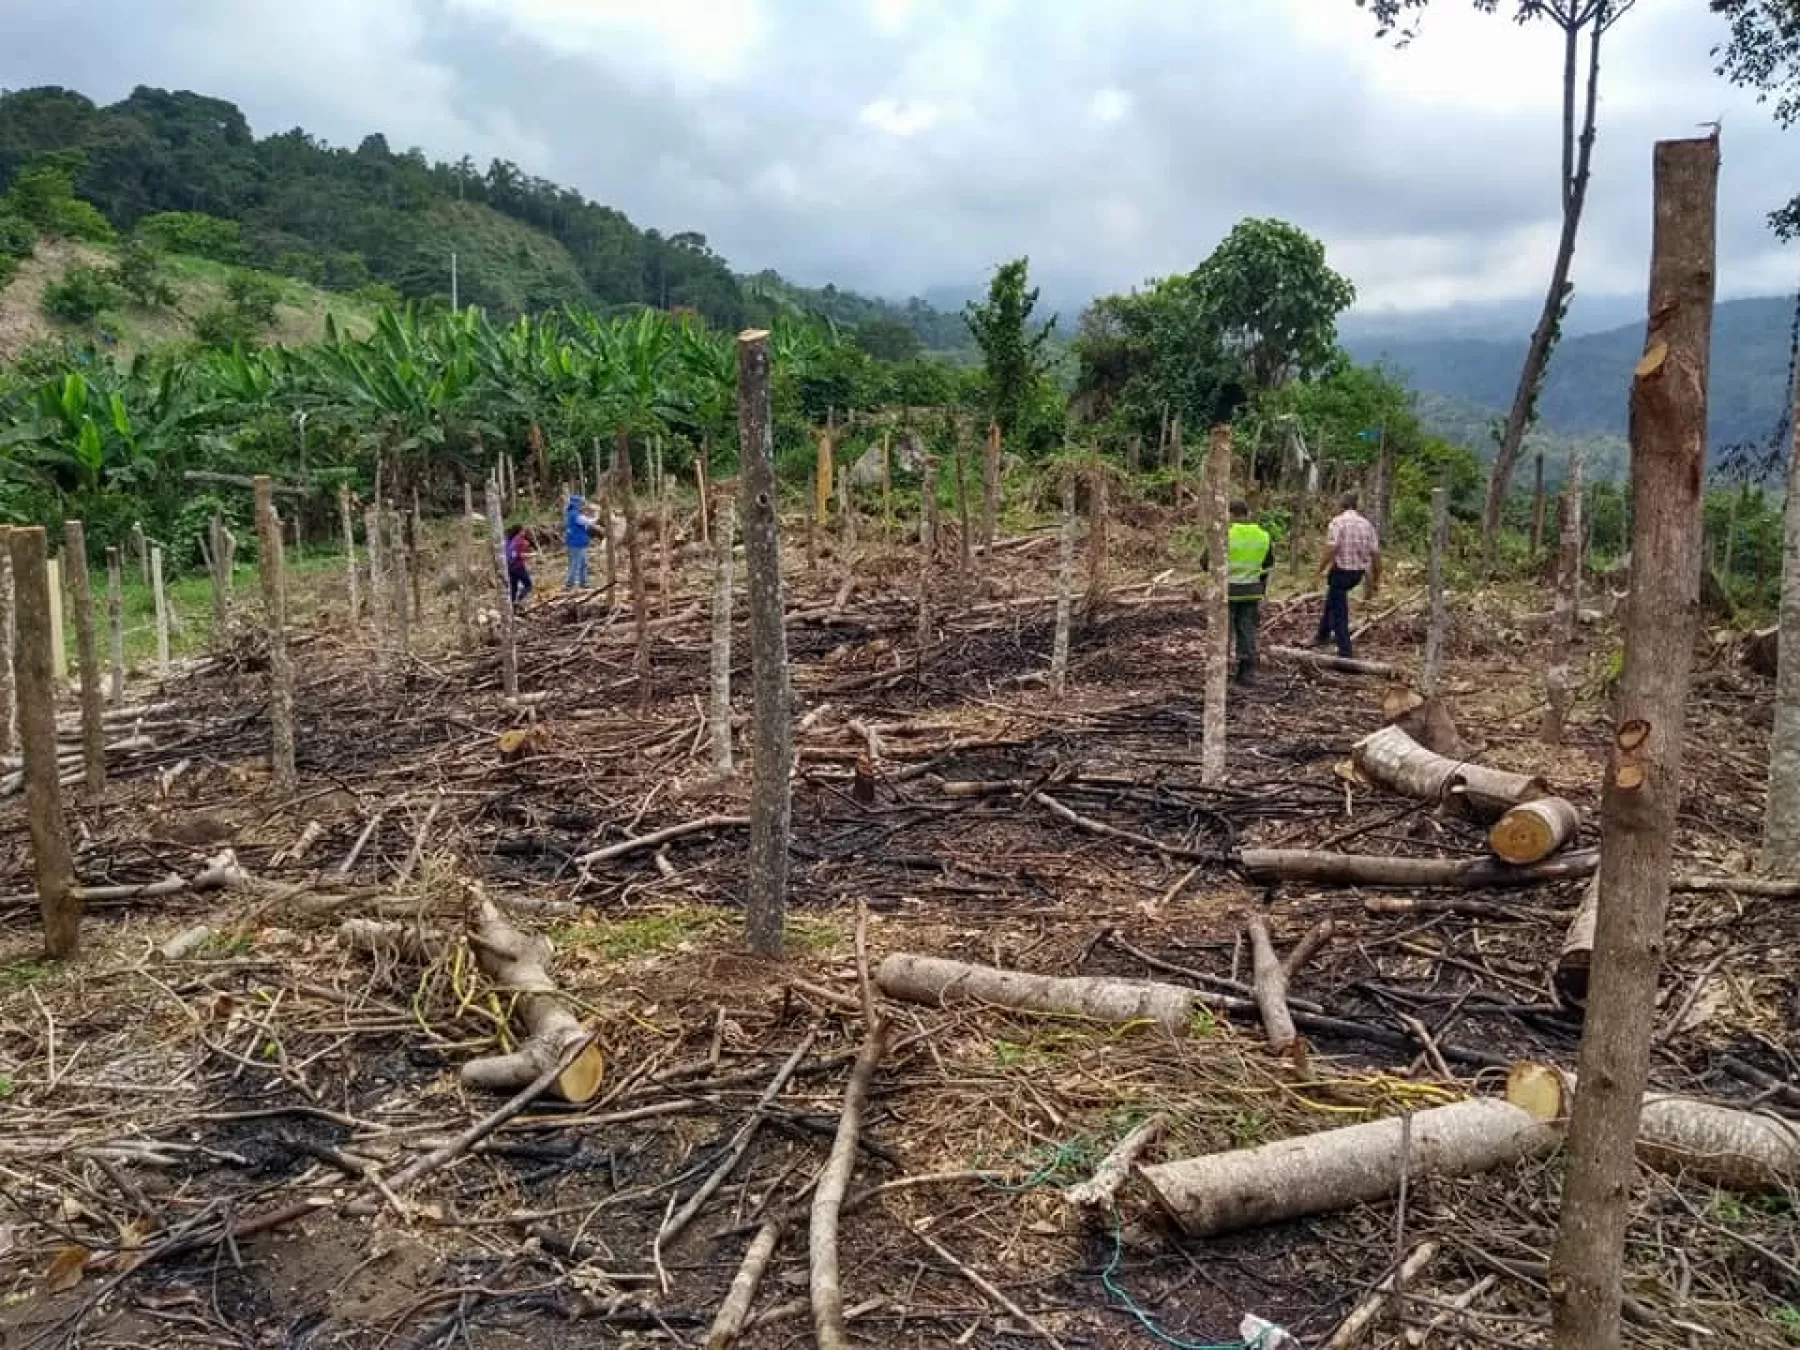 Siete colombianos y cuatro venezolanos fueron capturados en flagrancia arrasando los recursos naturales en la Vereda El Palmar – Los Alpes de Vistahermosa, en el departamento del Meta. (Foto: archivo)